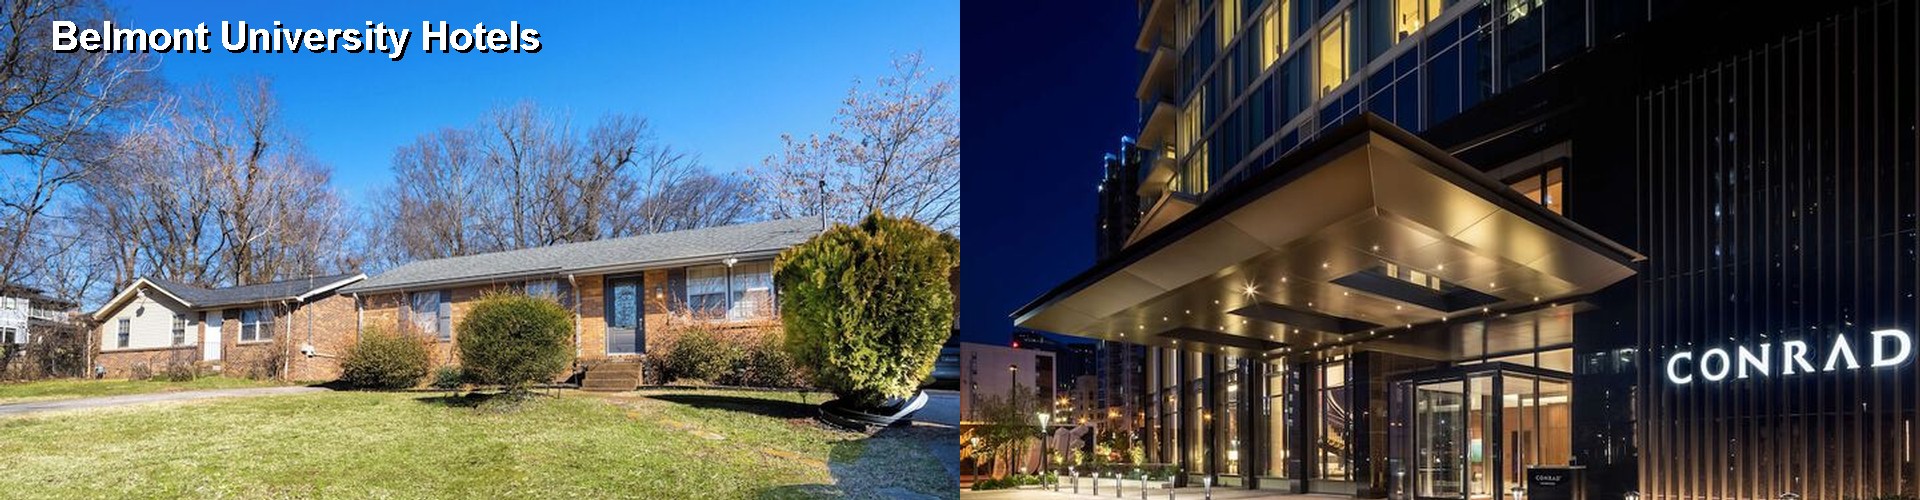 5 Best Hotels near Belmont University